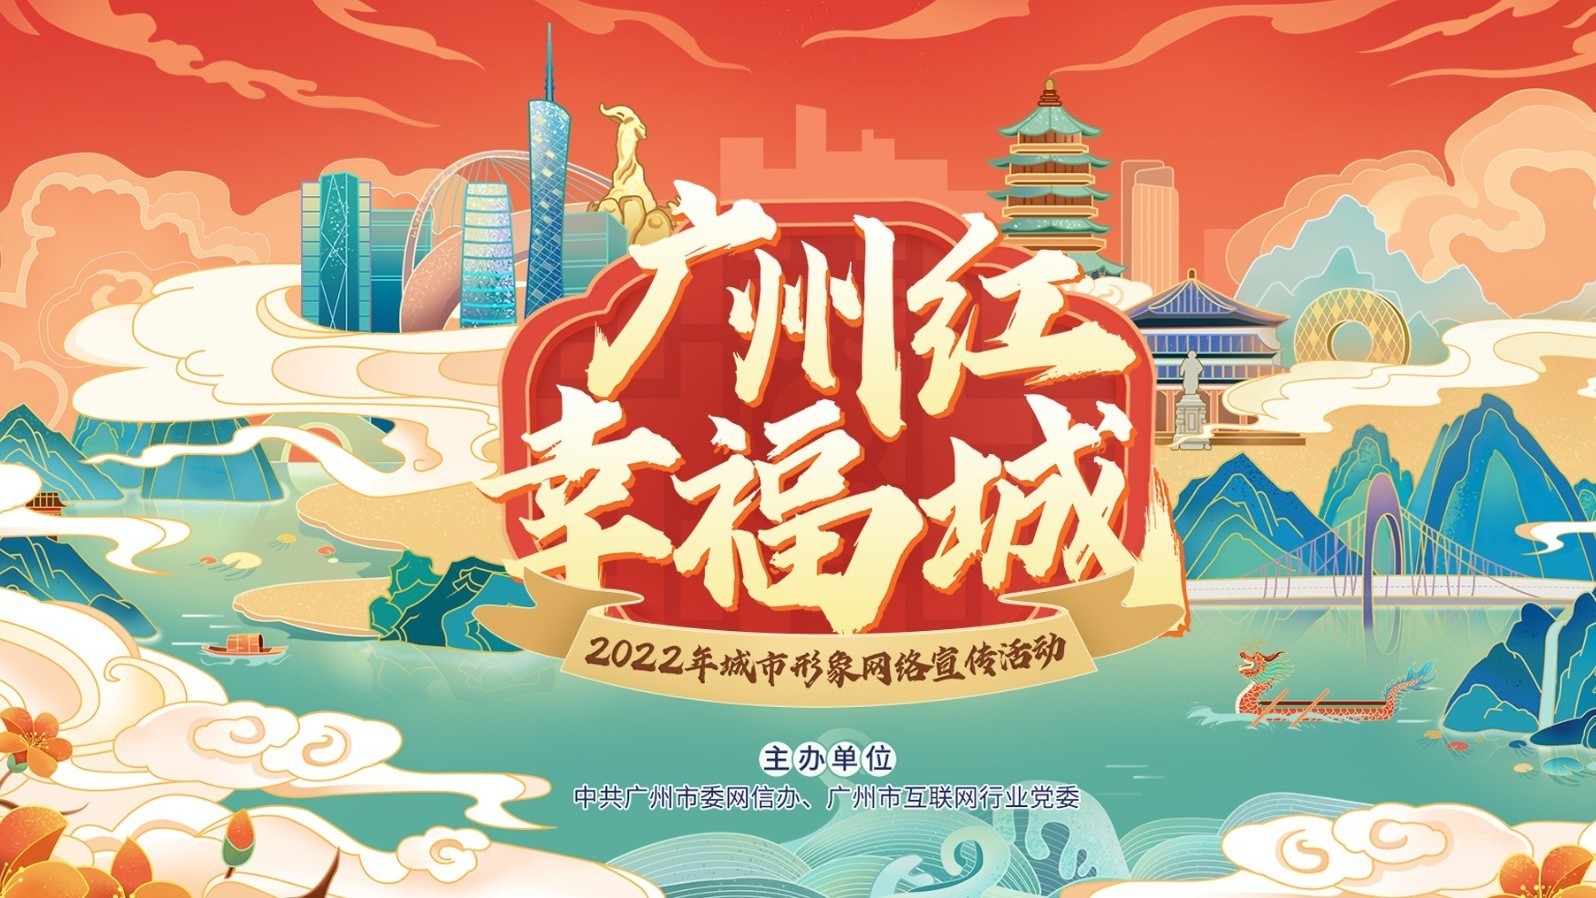 广州红 幸福城 2022城市形象网络宣传活动